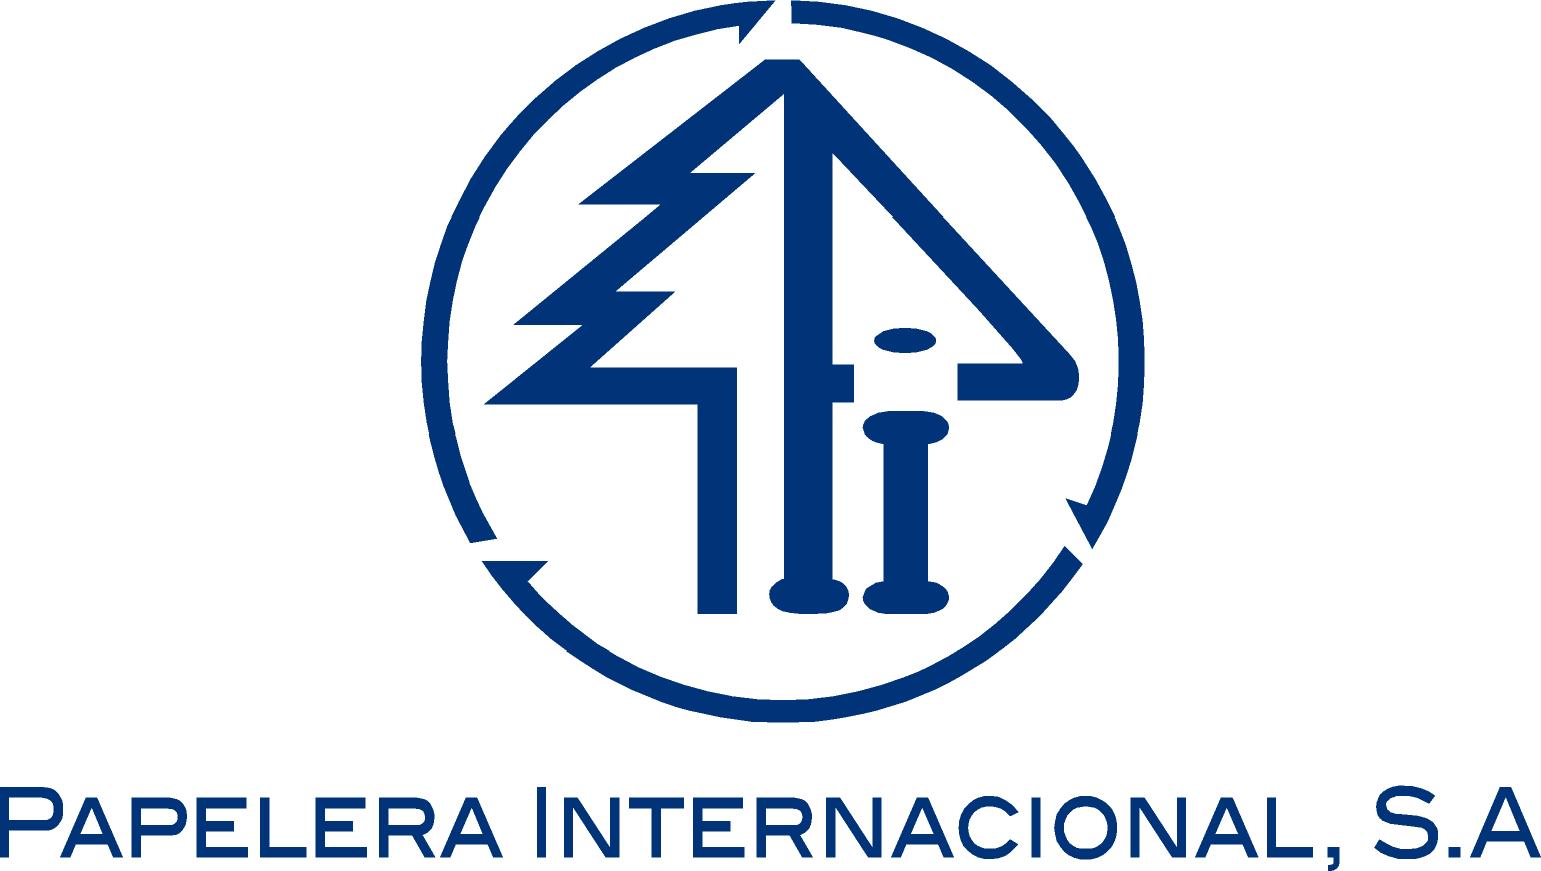 Logo Painsa.jpg